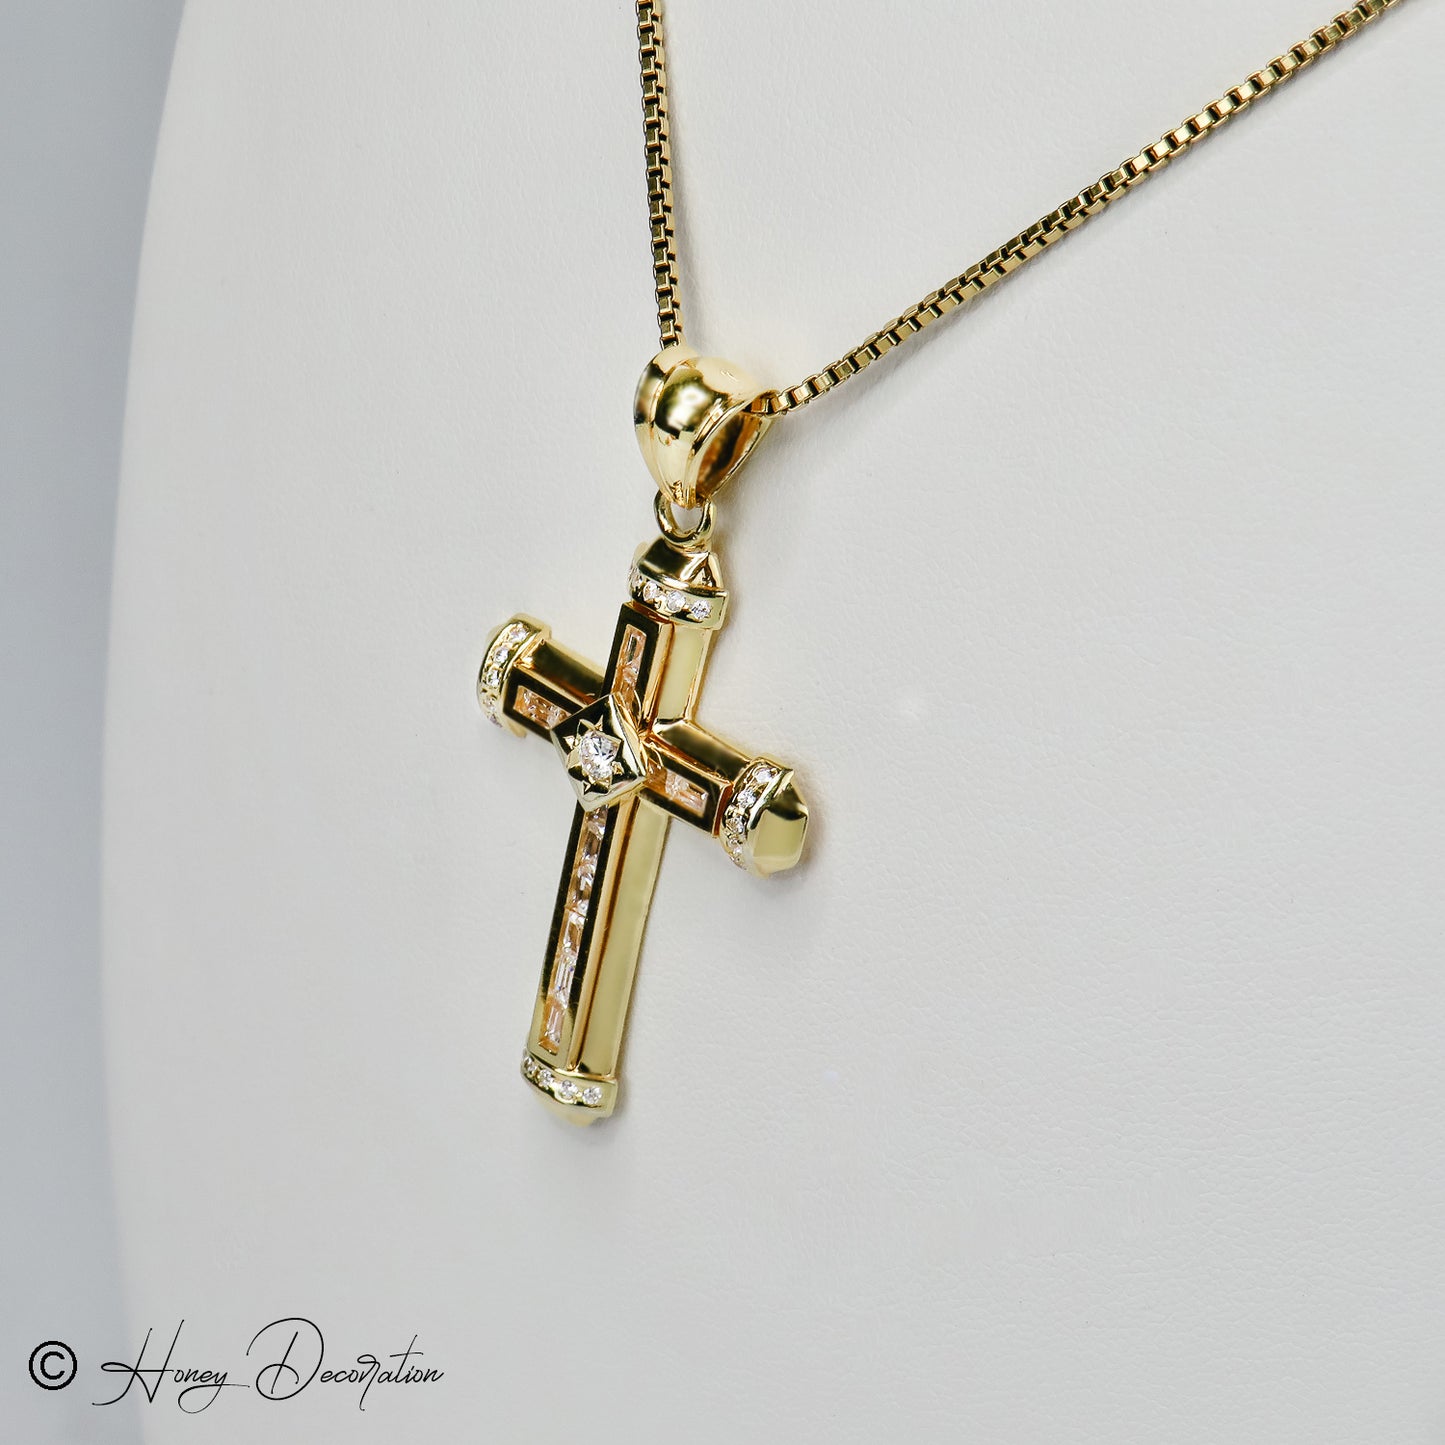 Exclusive cross pendant from 18 karat gold